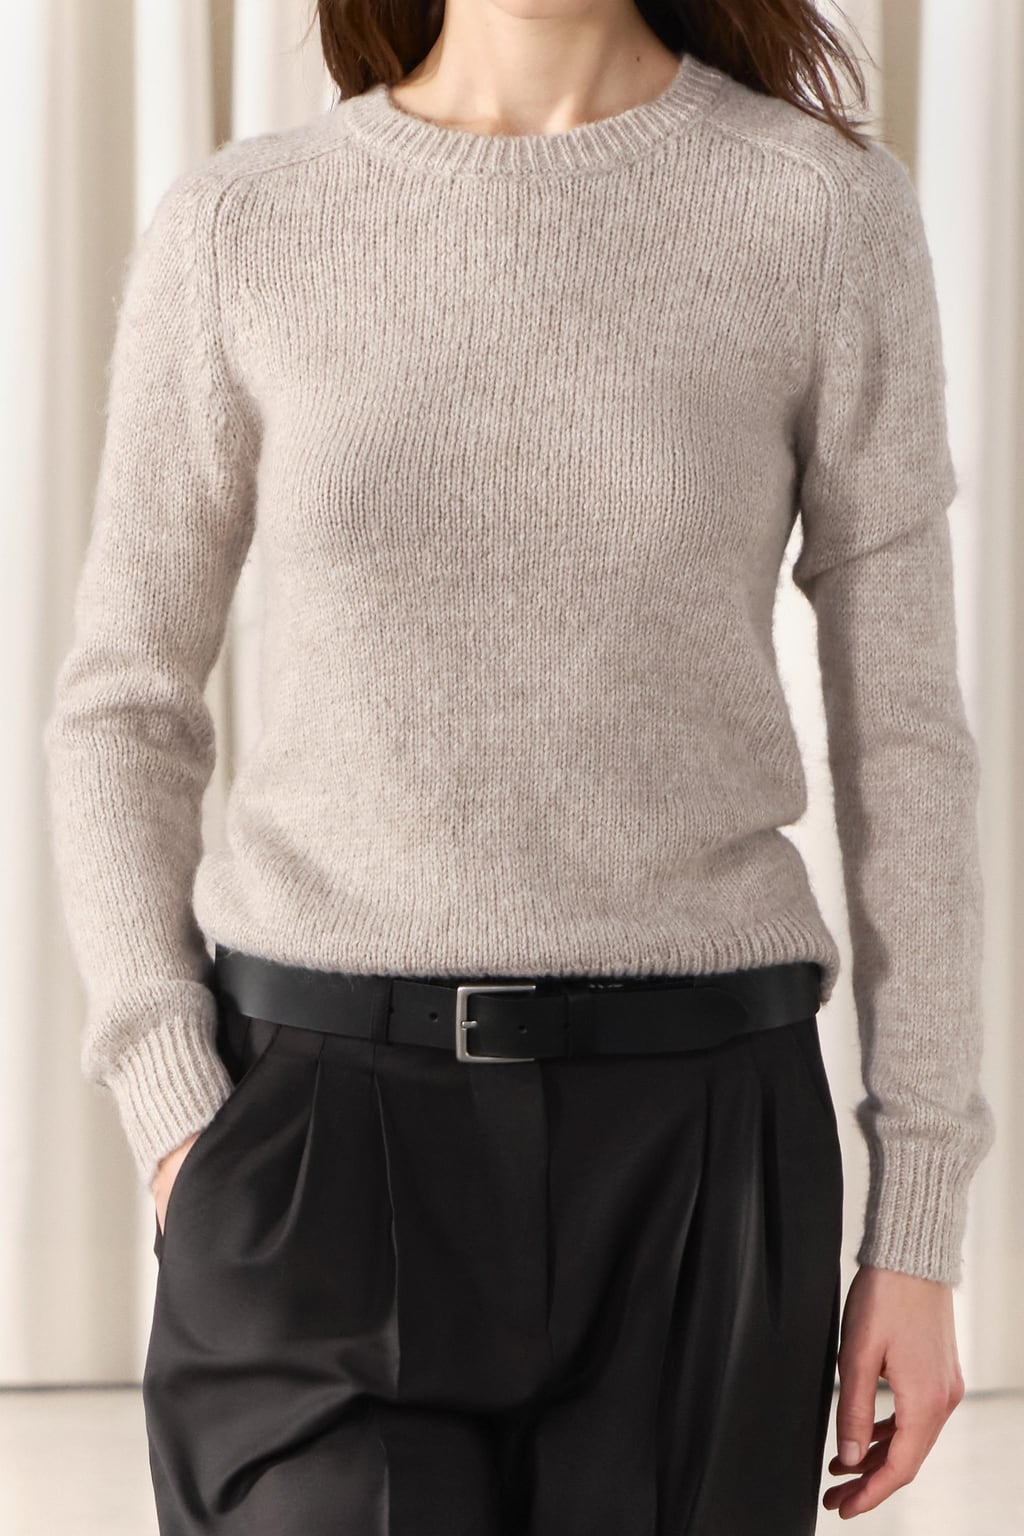 цена Базовый вязаный свитер ZARA, жемчужно-серый